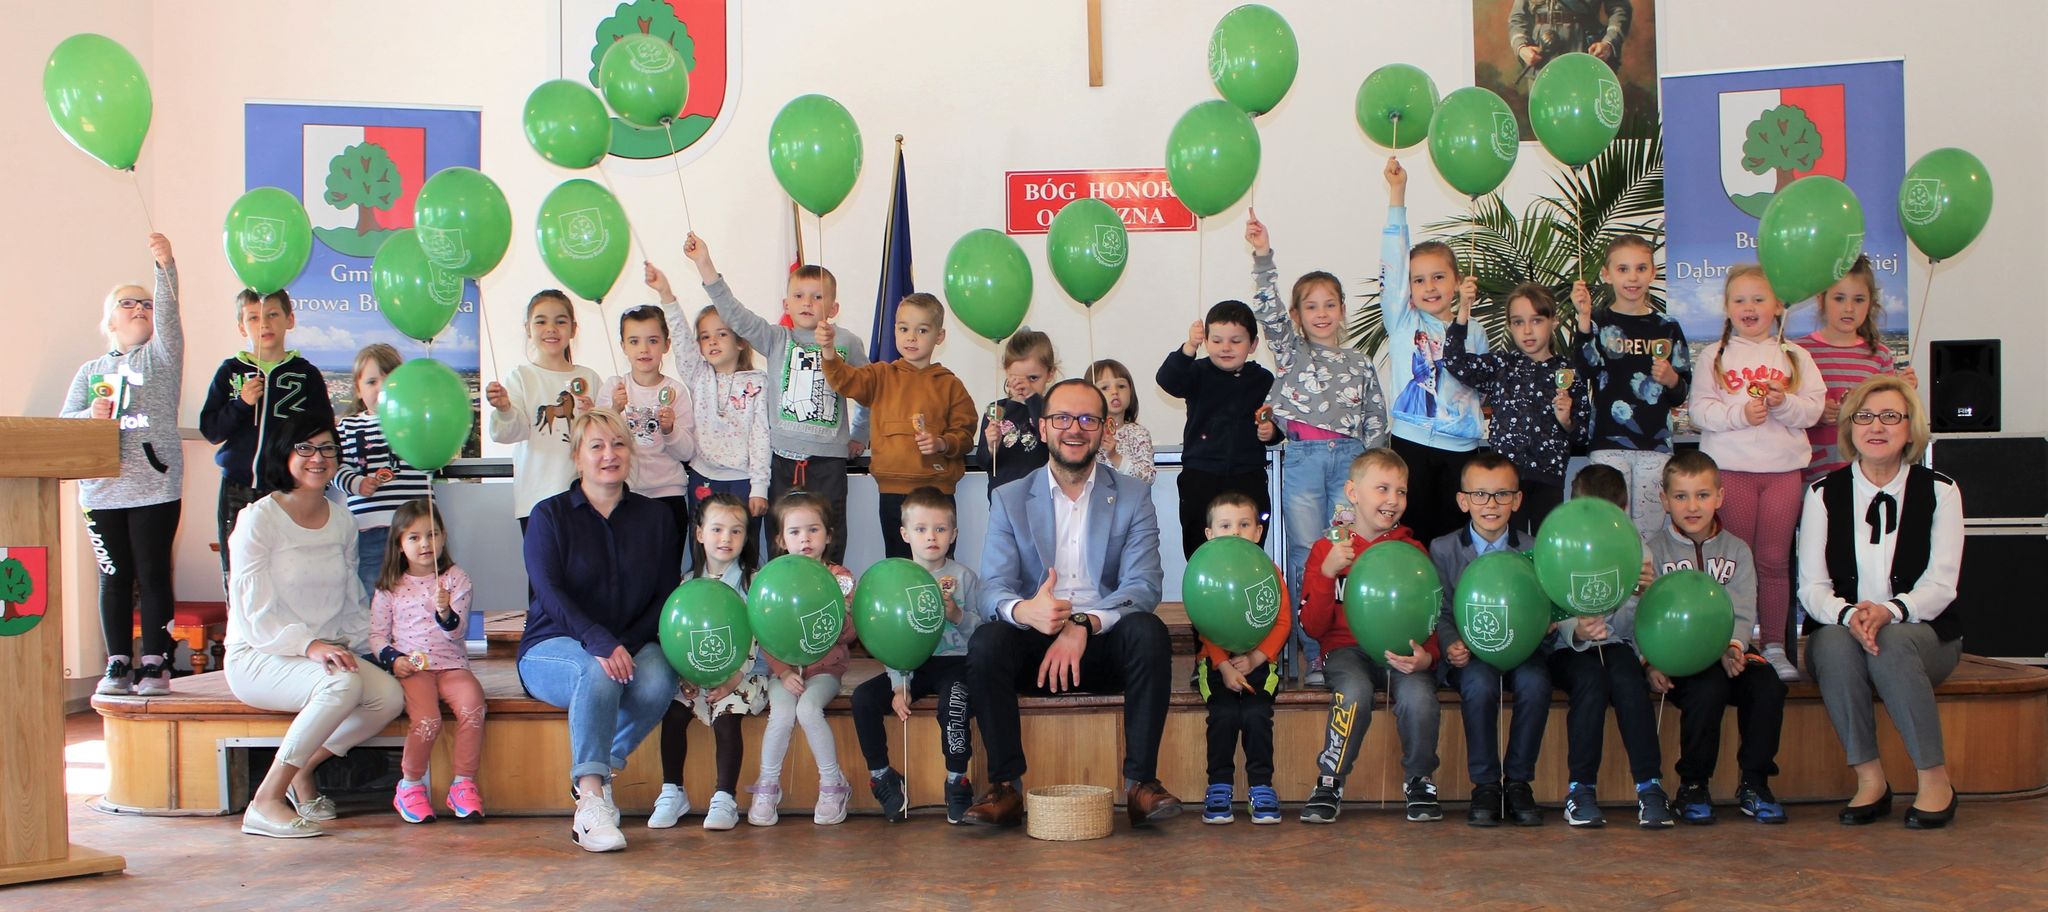 dzieci z balonikami, burmistrz, panie nauczycielki